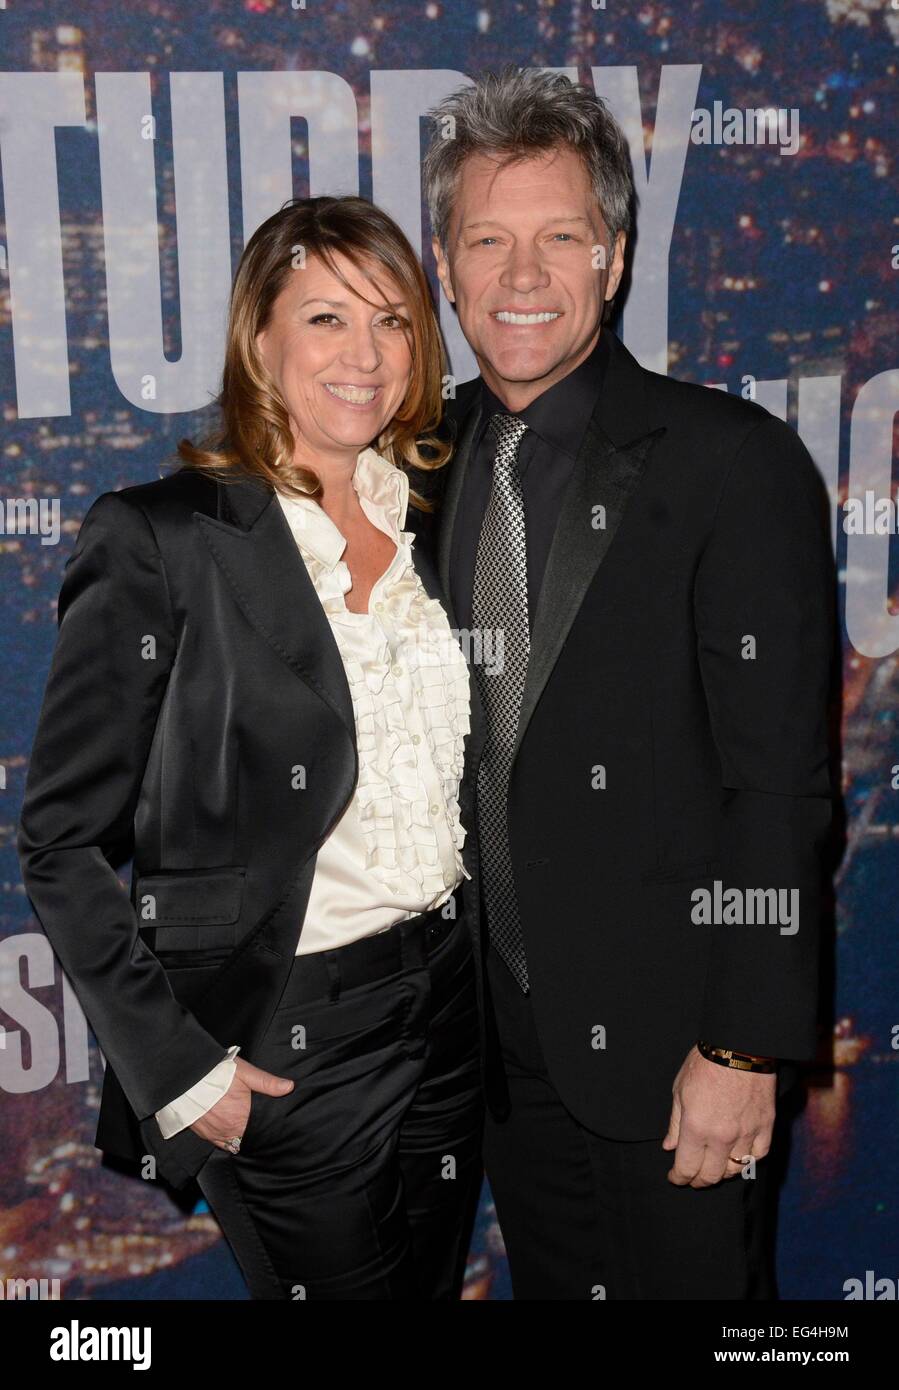 Jon Bon Jovi, Dorothea Hurley presso gli arrivi per il Saturday Night Live SNL quarantesimo anniversario, Rockefeller Center, New York, NY Febbraio 15, 2015. Foto di: Derek Storm/Everett Collection Foto Stock